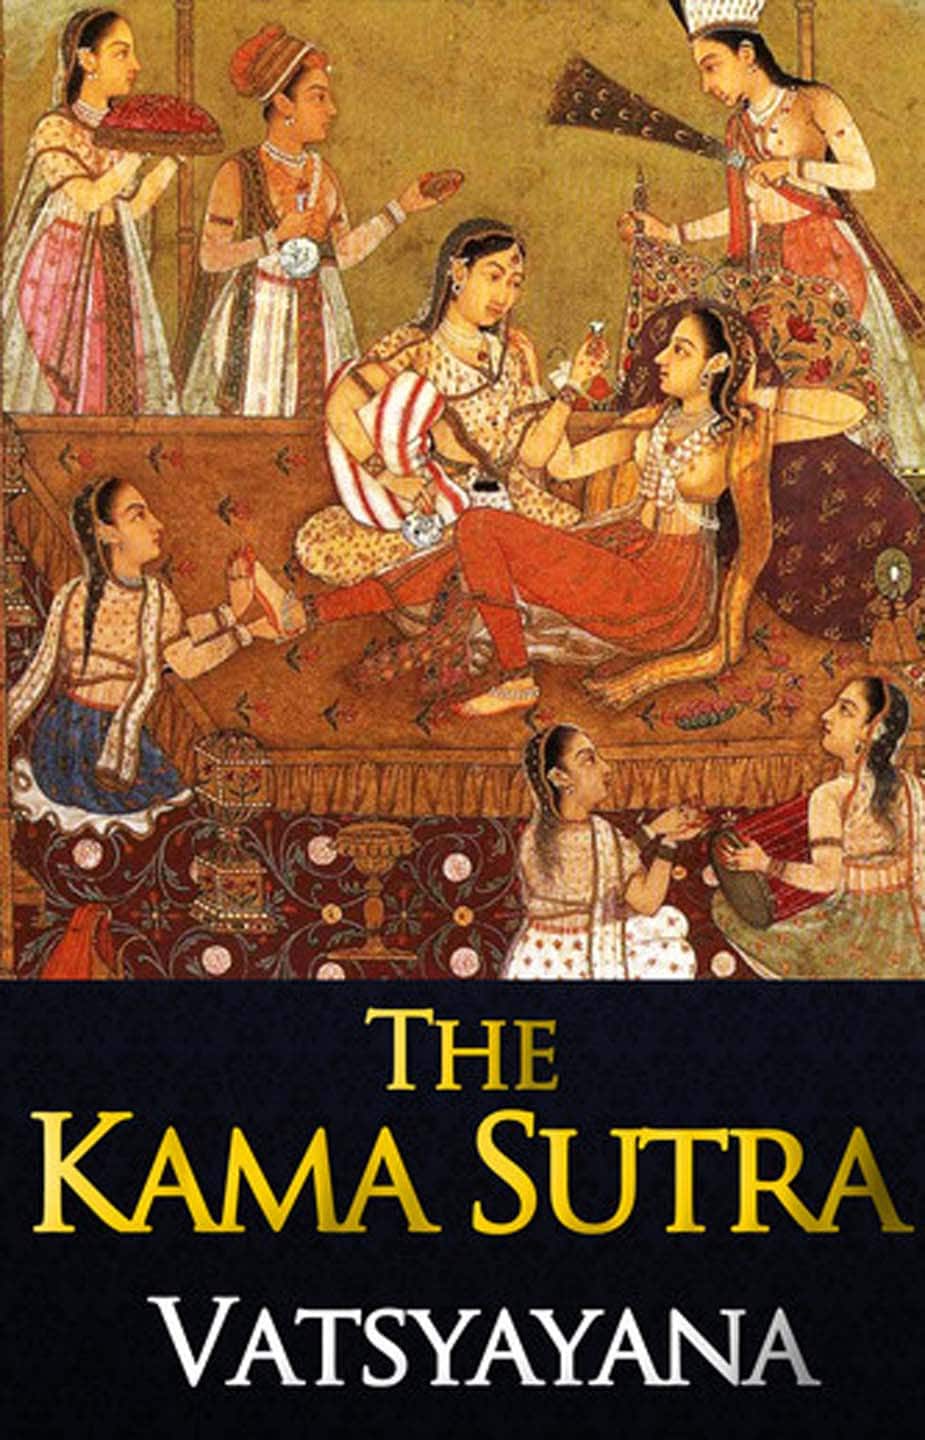 200 साल पहले कामसूत्र के छपते ही क्यों मच गया था तहलका? - know more about  the book kamasutra written by vatsyayana – News18 हिंदी